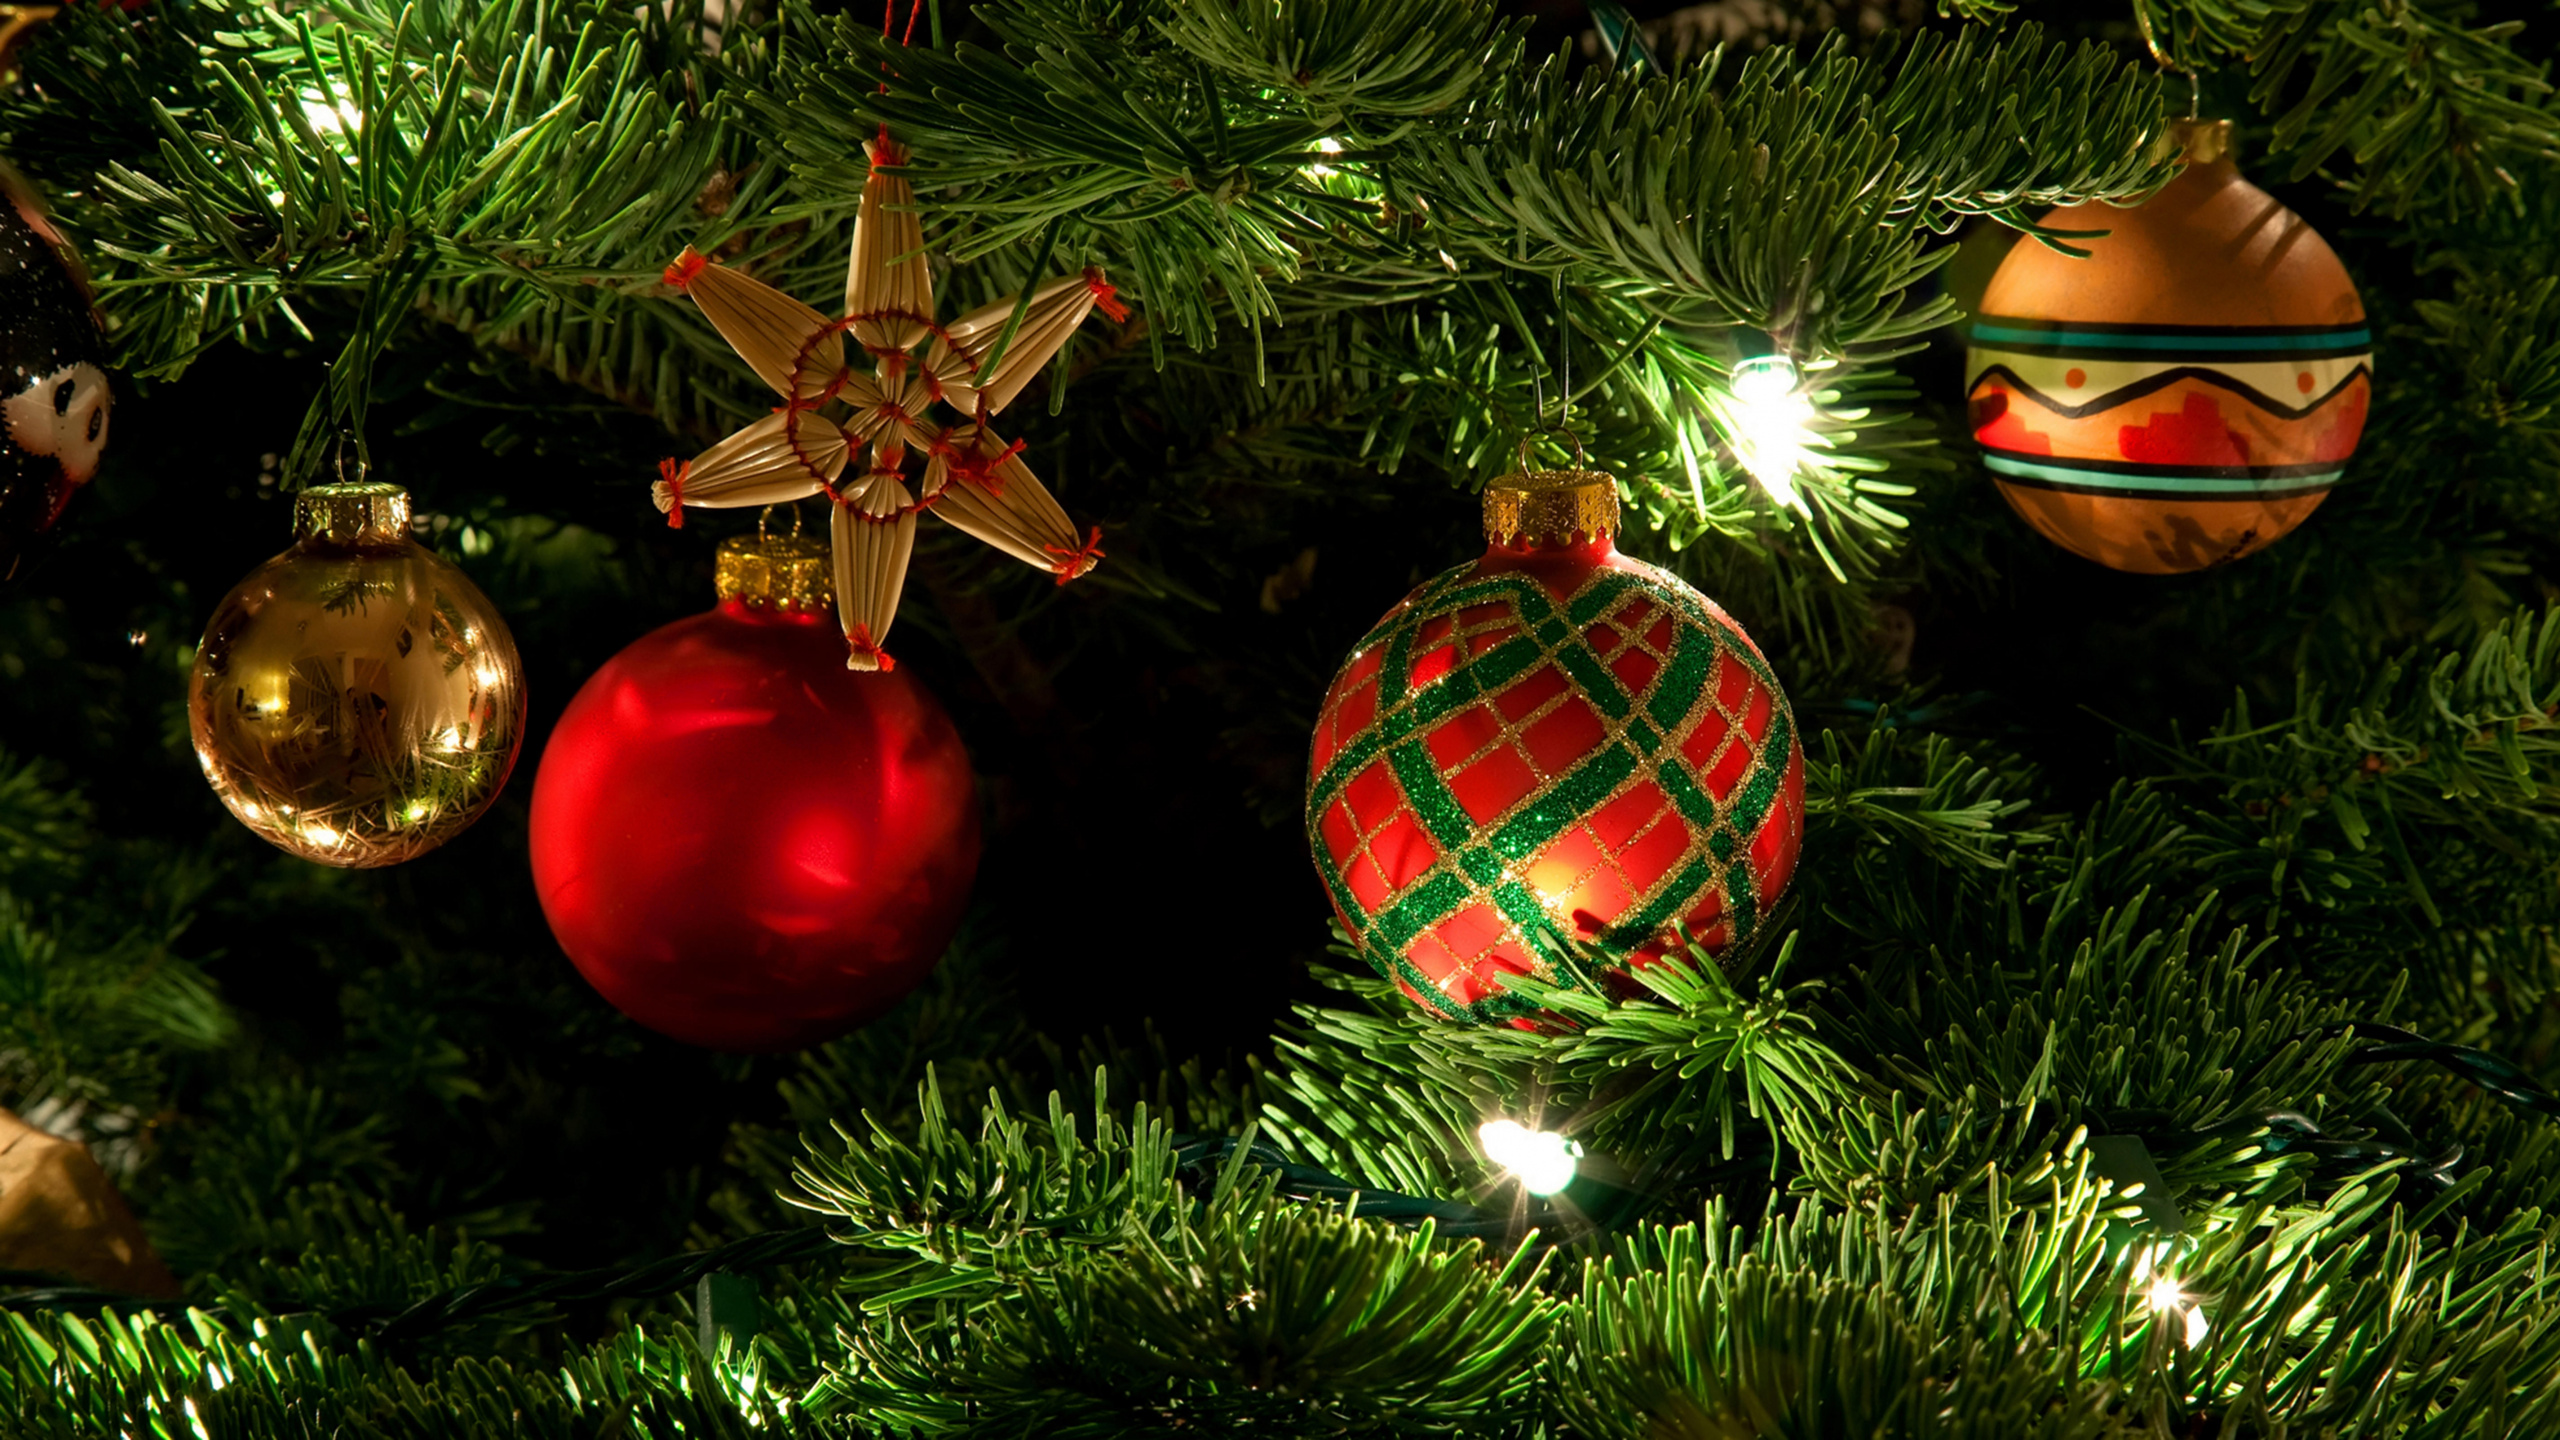 Le Jour De Noël, Ornement de Noël, Décoration de Noël, Arbre de Noël, Sapin. Wallpaper in 2560x1440 Resolution